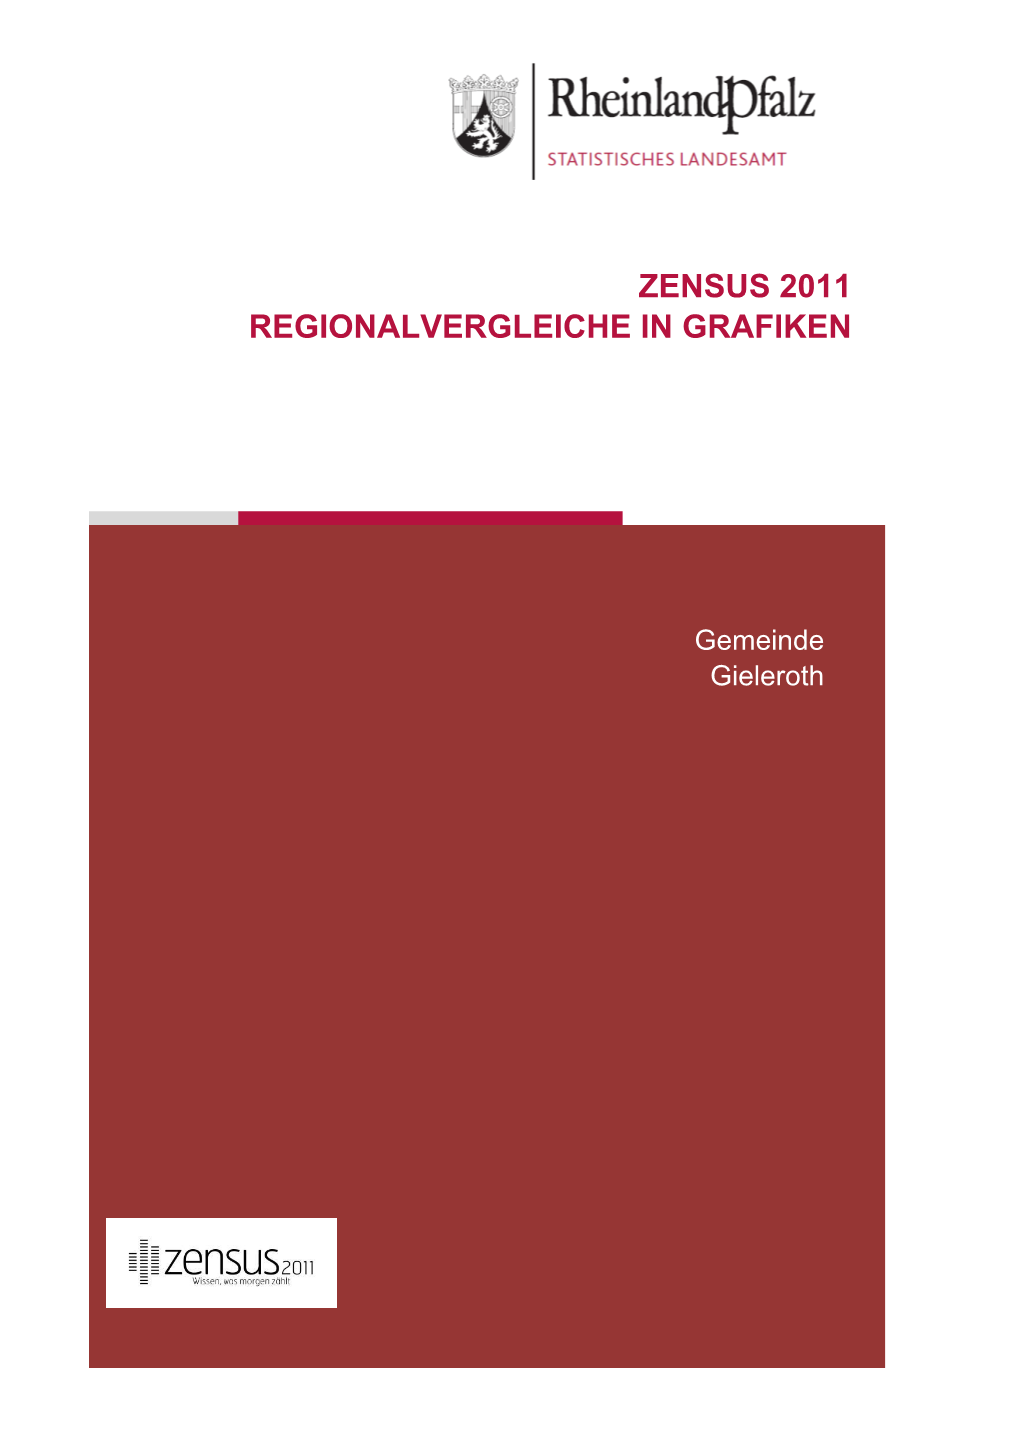 Regionalvergleiche in Grafiken Am 9. Mai 2011, Gieleroth